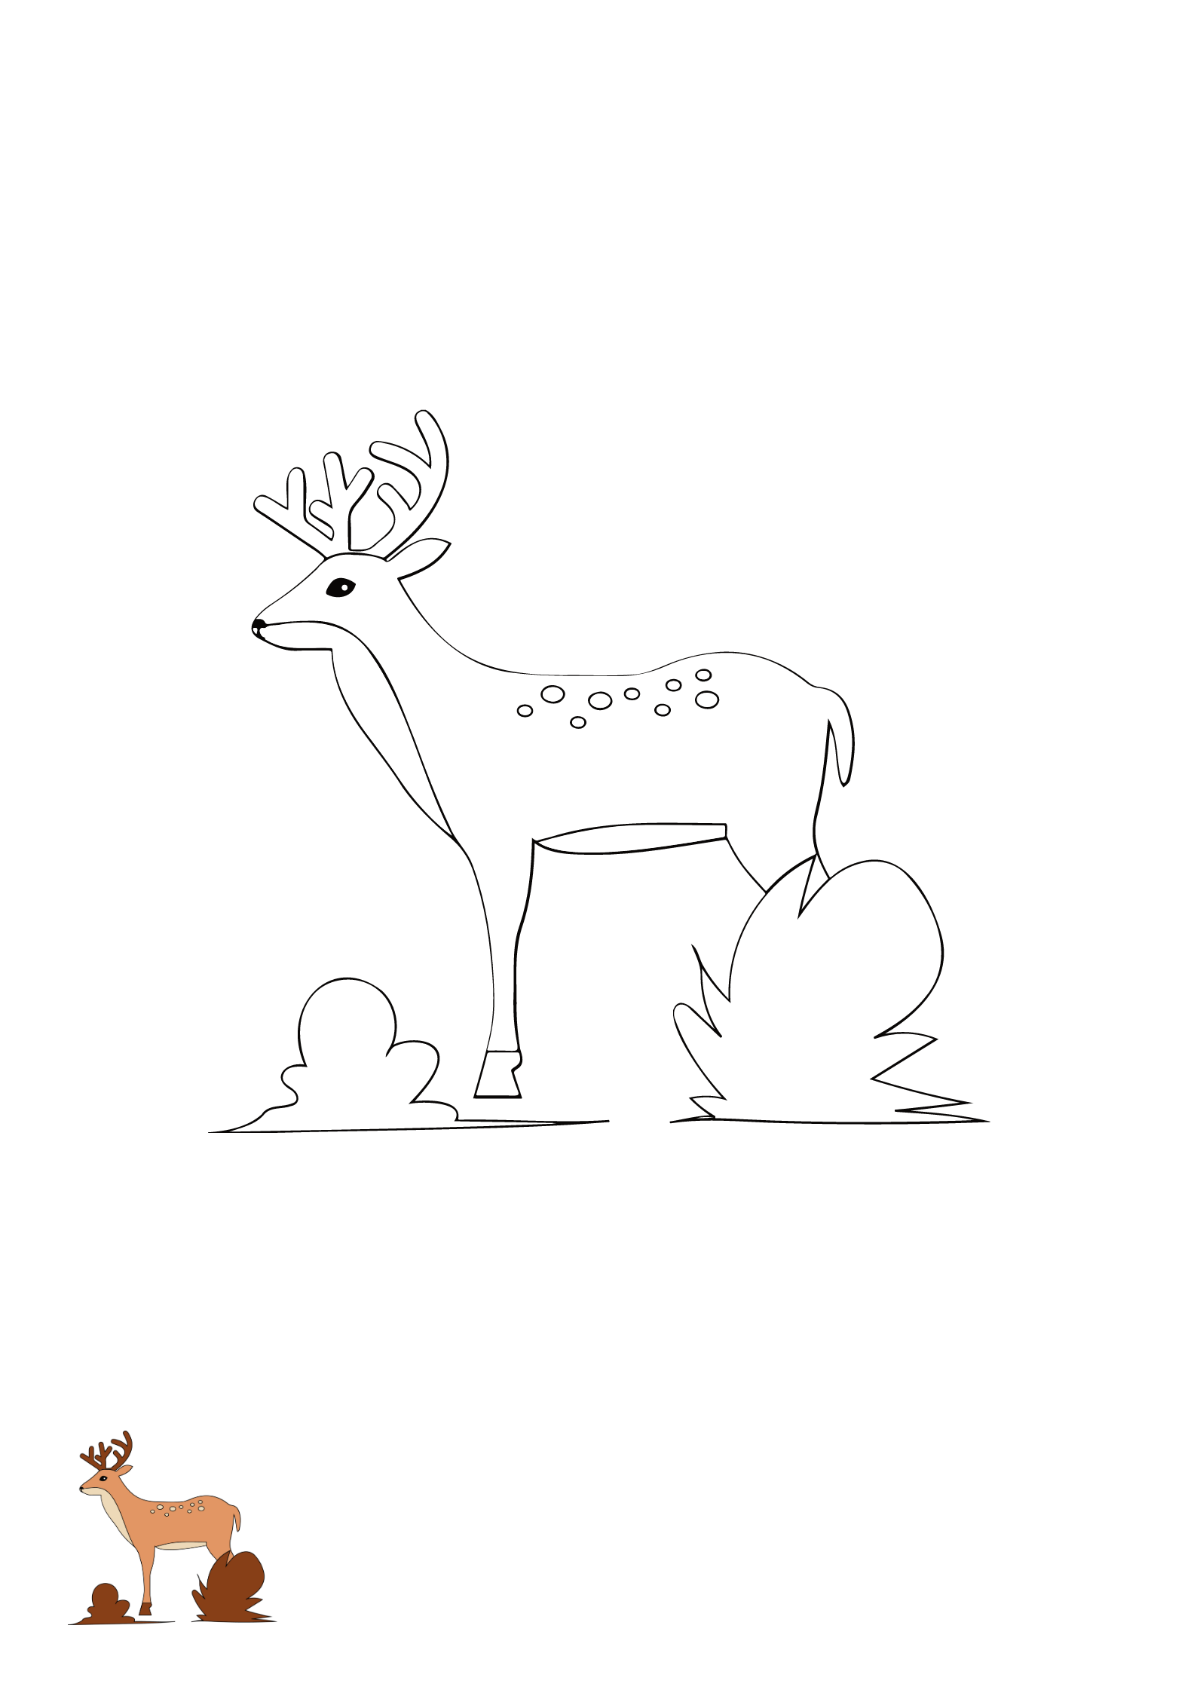 Simple Deer Coloring Page Template